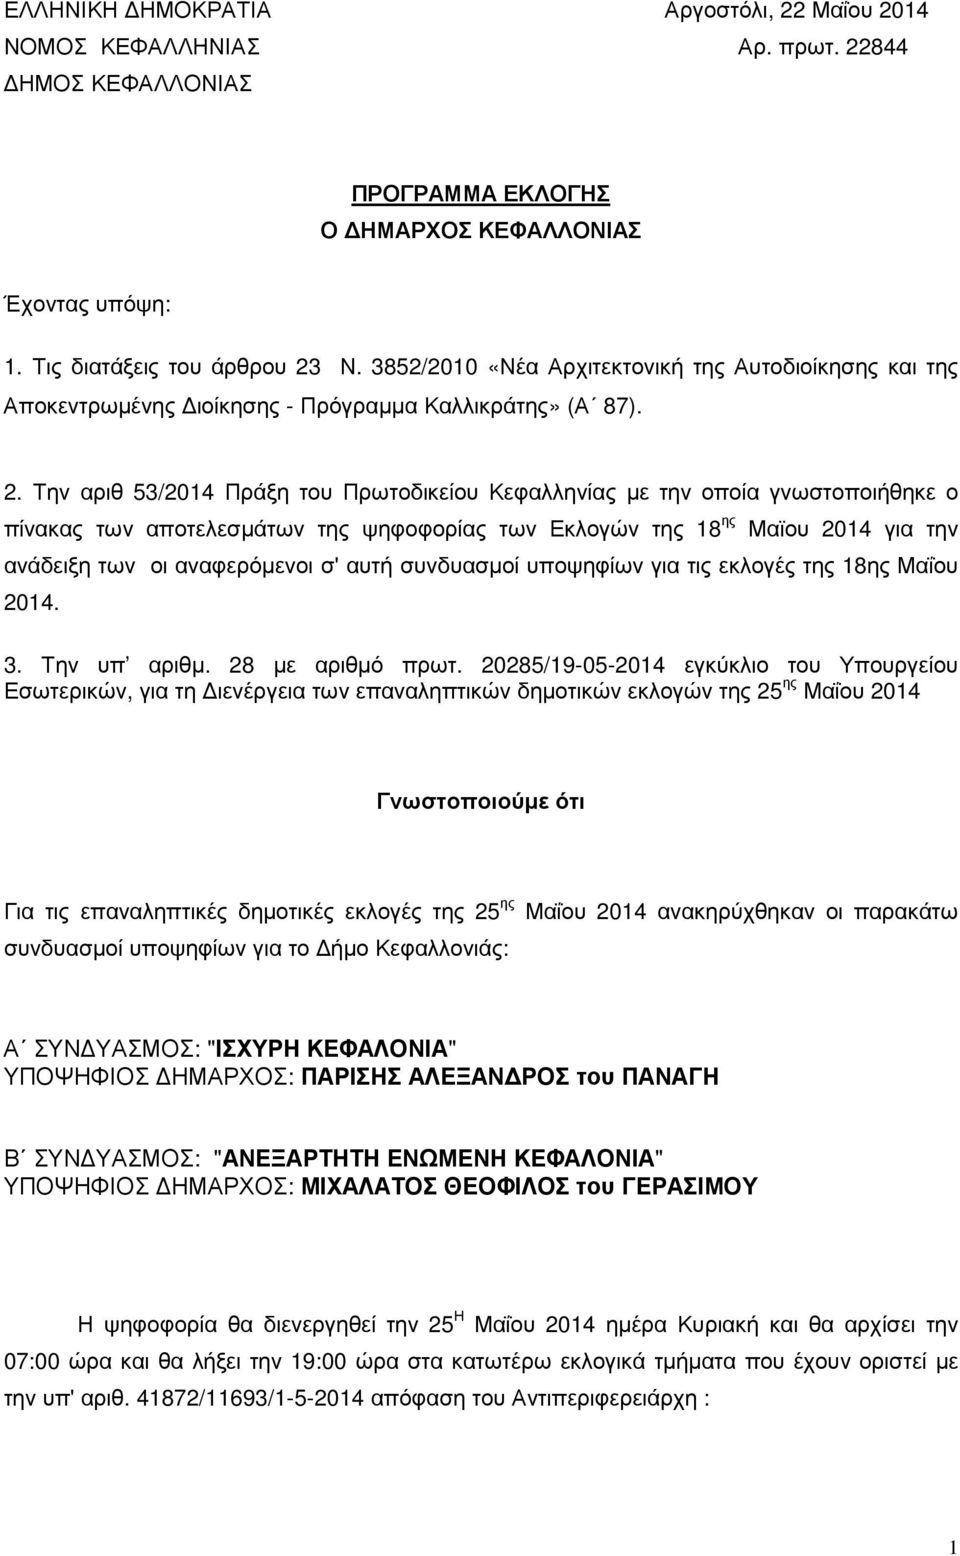 Την αριθ 53/2014 Πράξη του Πρωτοδικείου Κεφαλληνίας µε την οποία γνωστοποιήθηκε ο πίνακας των αποτελεσµάτων της ψηφοφορίας των Εκλογών της 18 ης Μαϊου 2014 για την ανάδειξη των οι αναφερόµενοι σ'